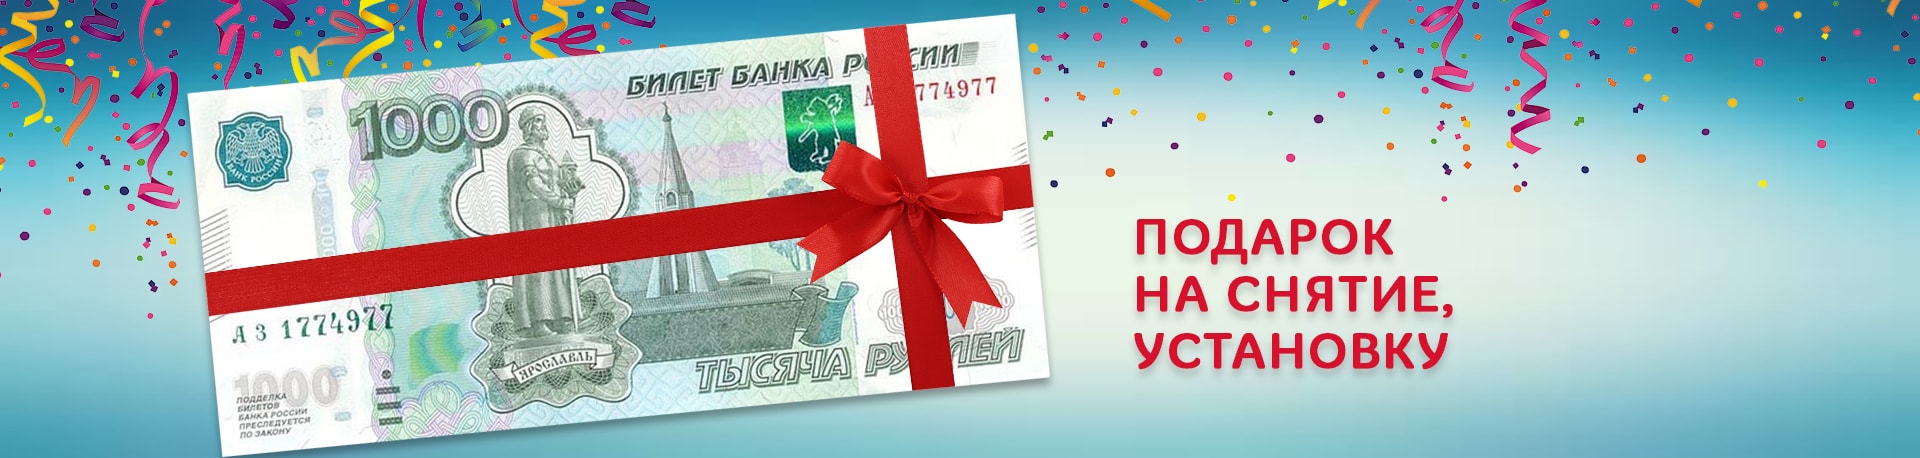 1000 рублей — подарок на снятие/установку